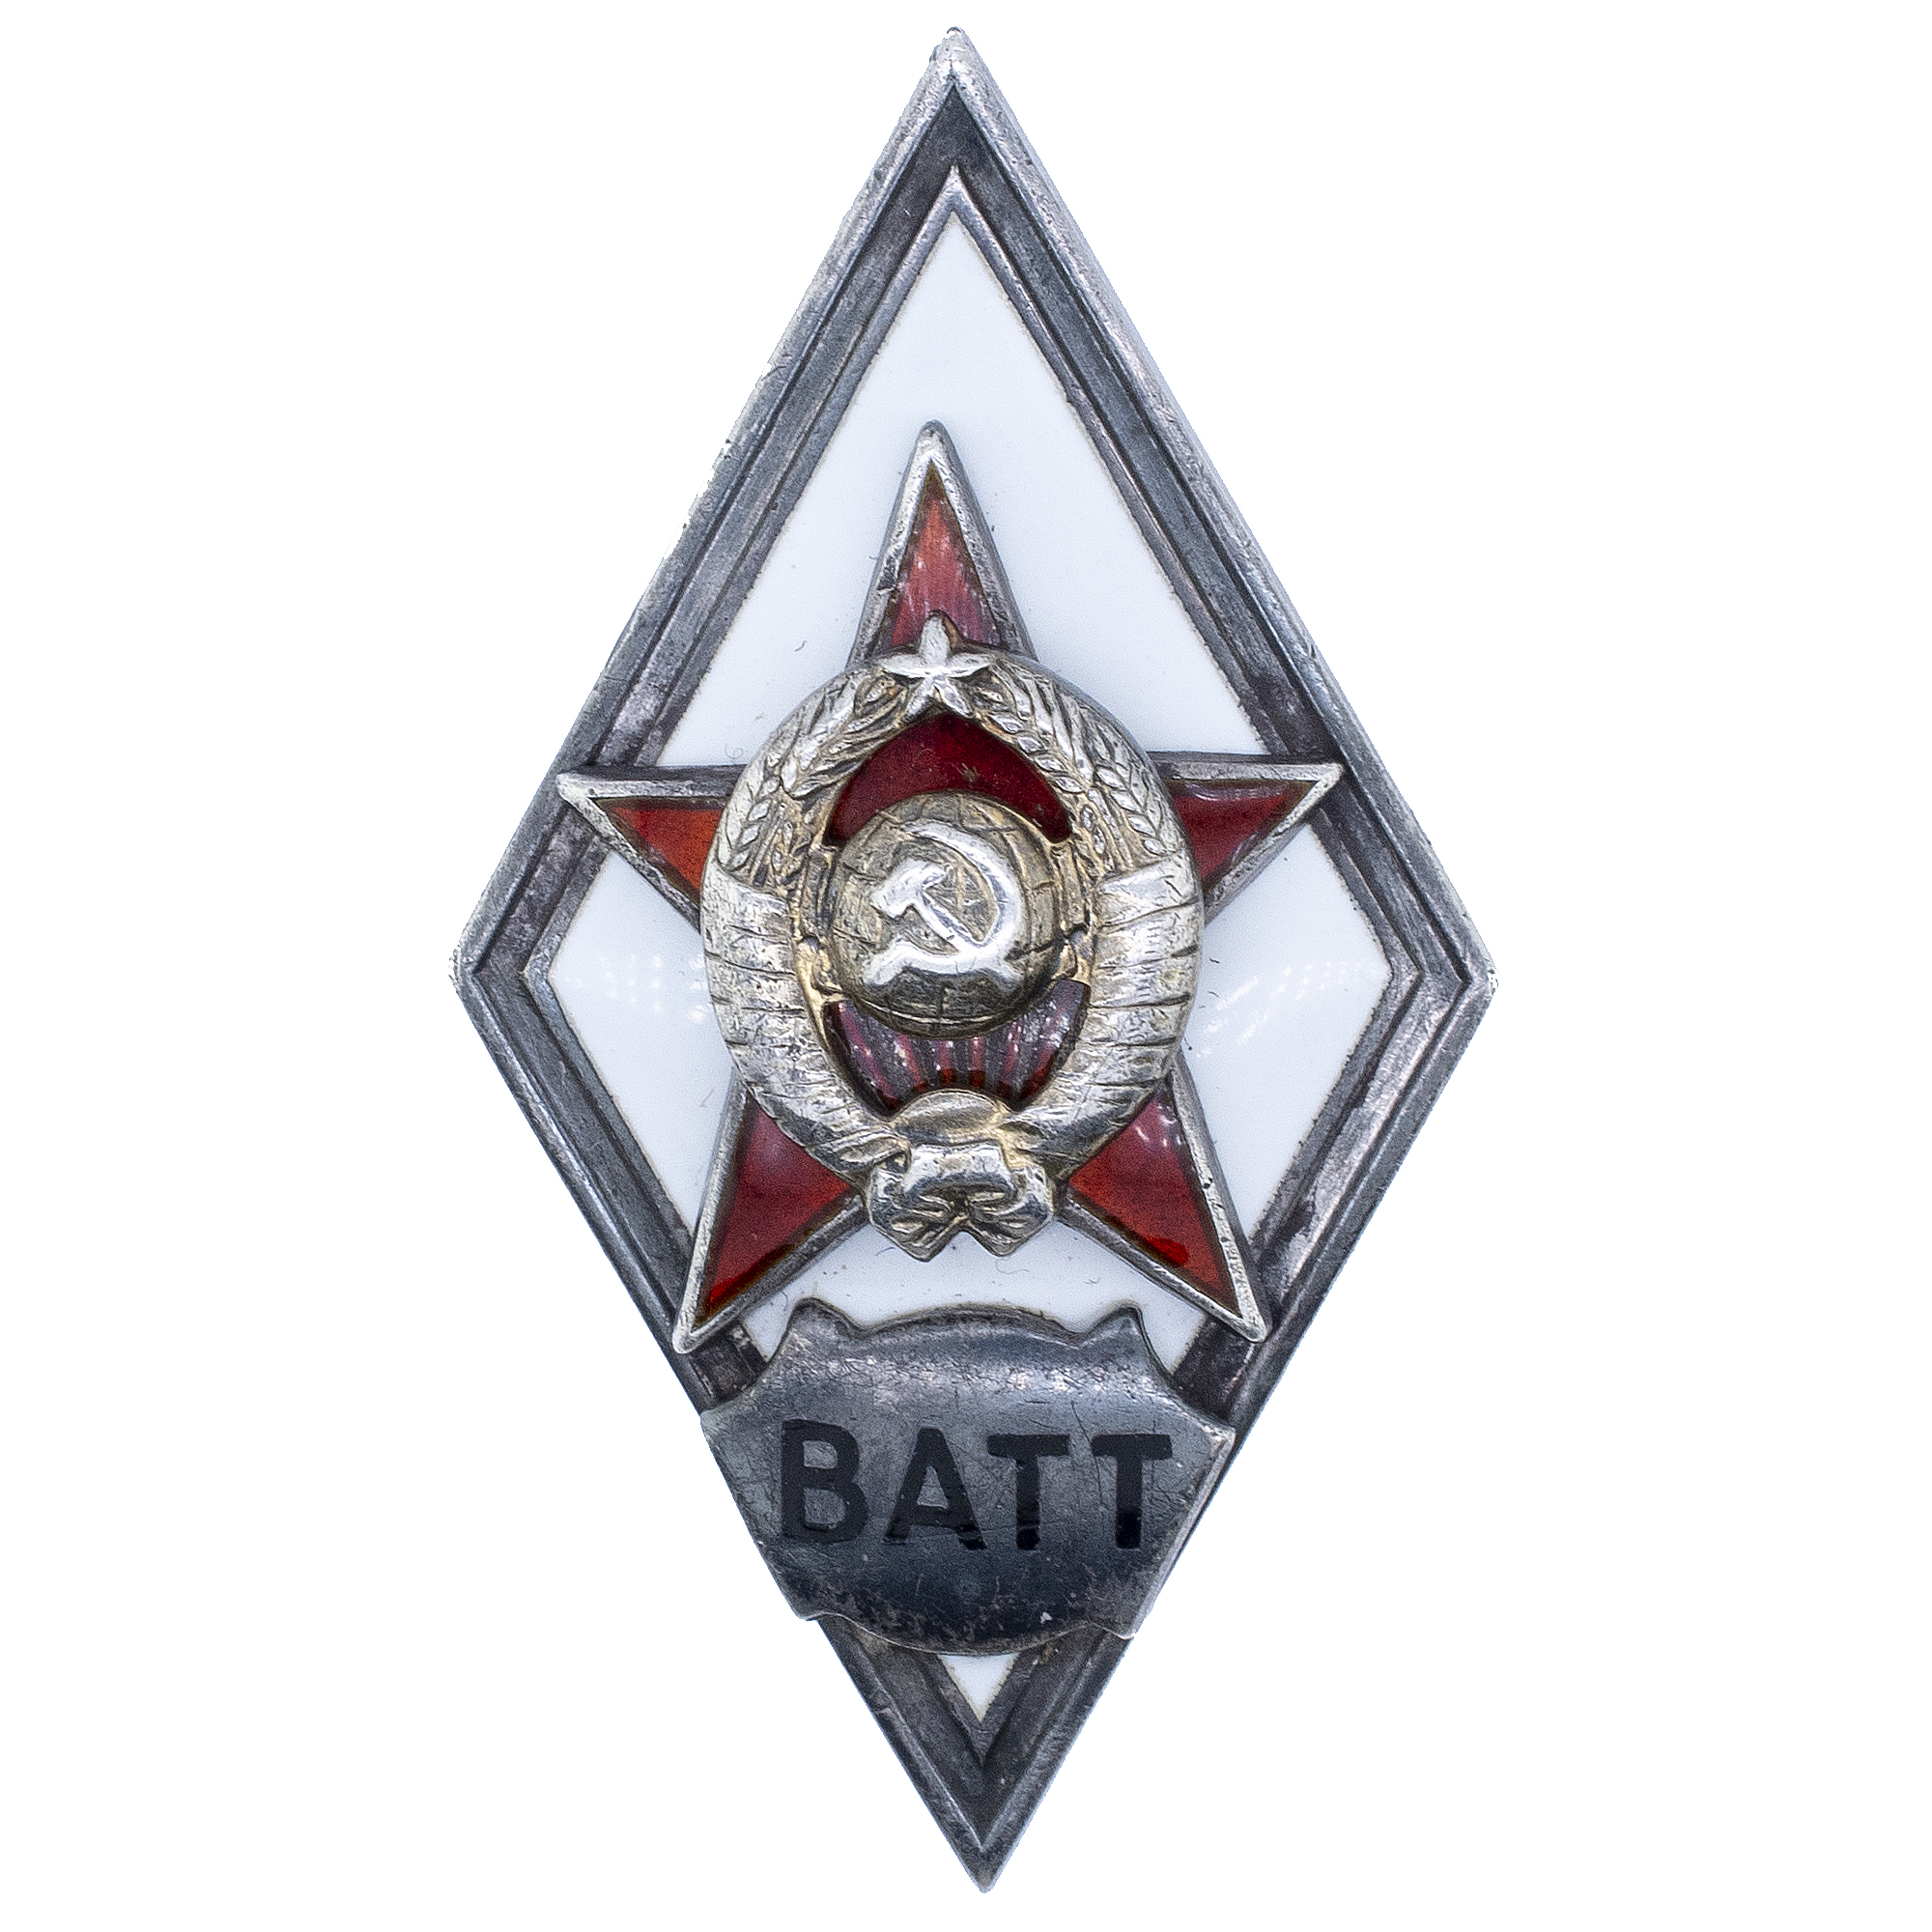 Знак выпускника Военной академии тыла и транспорта (ВАТТ), II тип, б/н., АРТИКУЛ П20-41